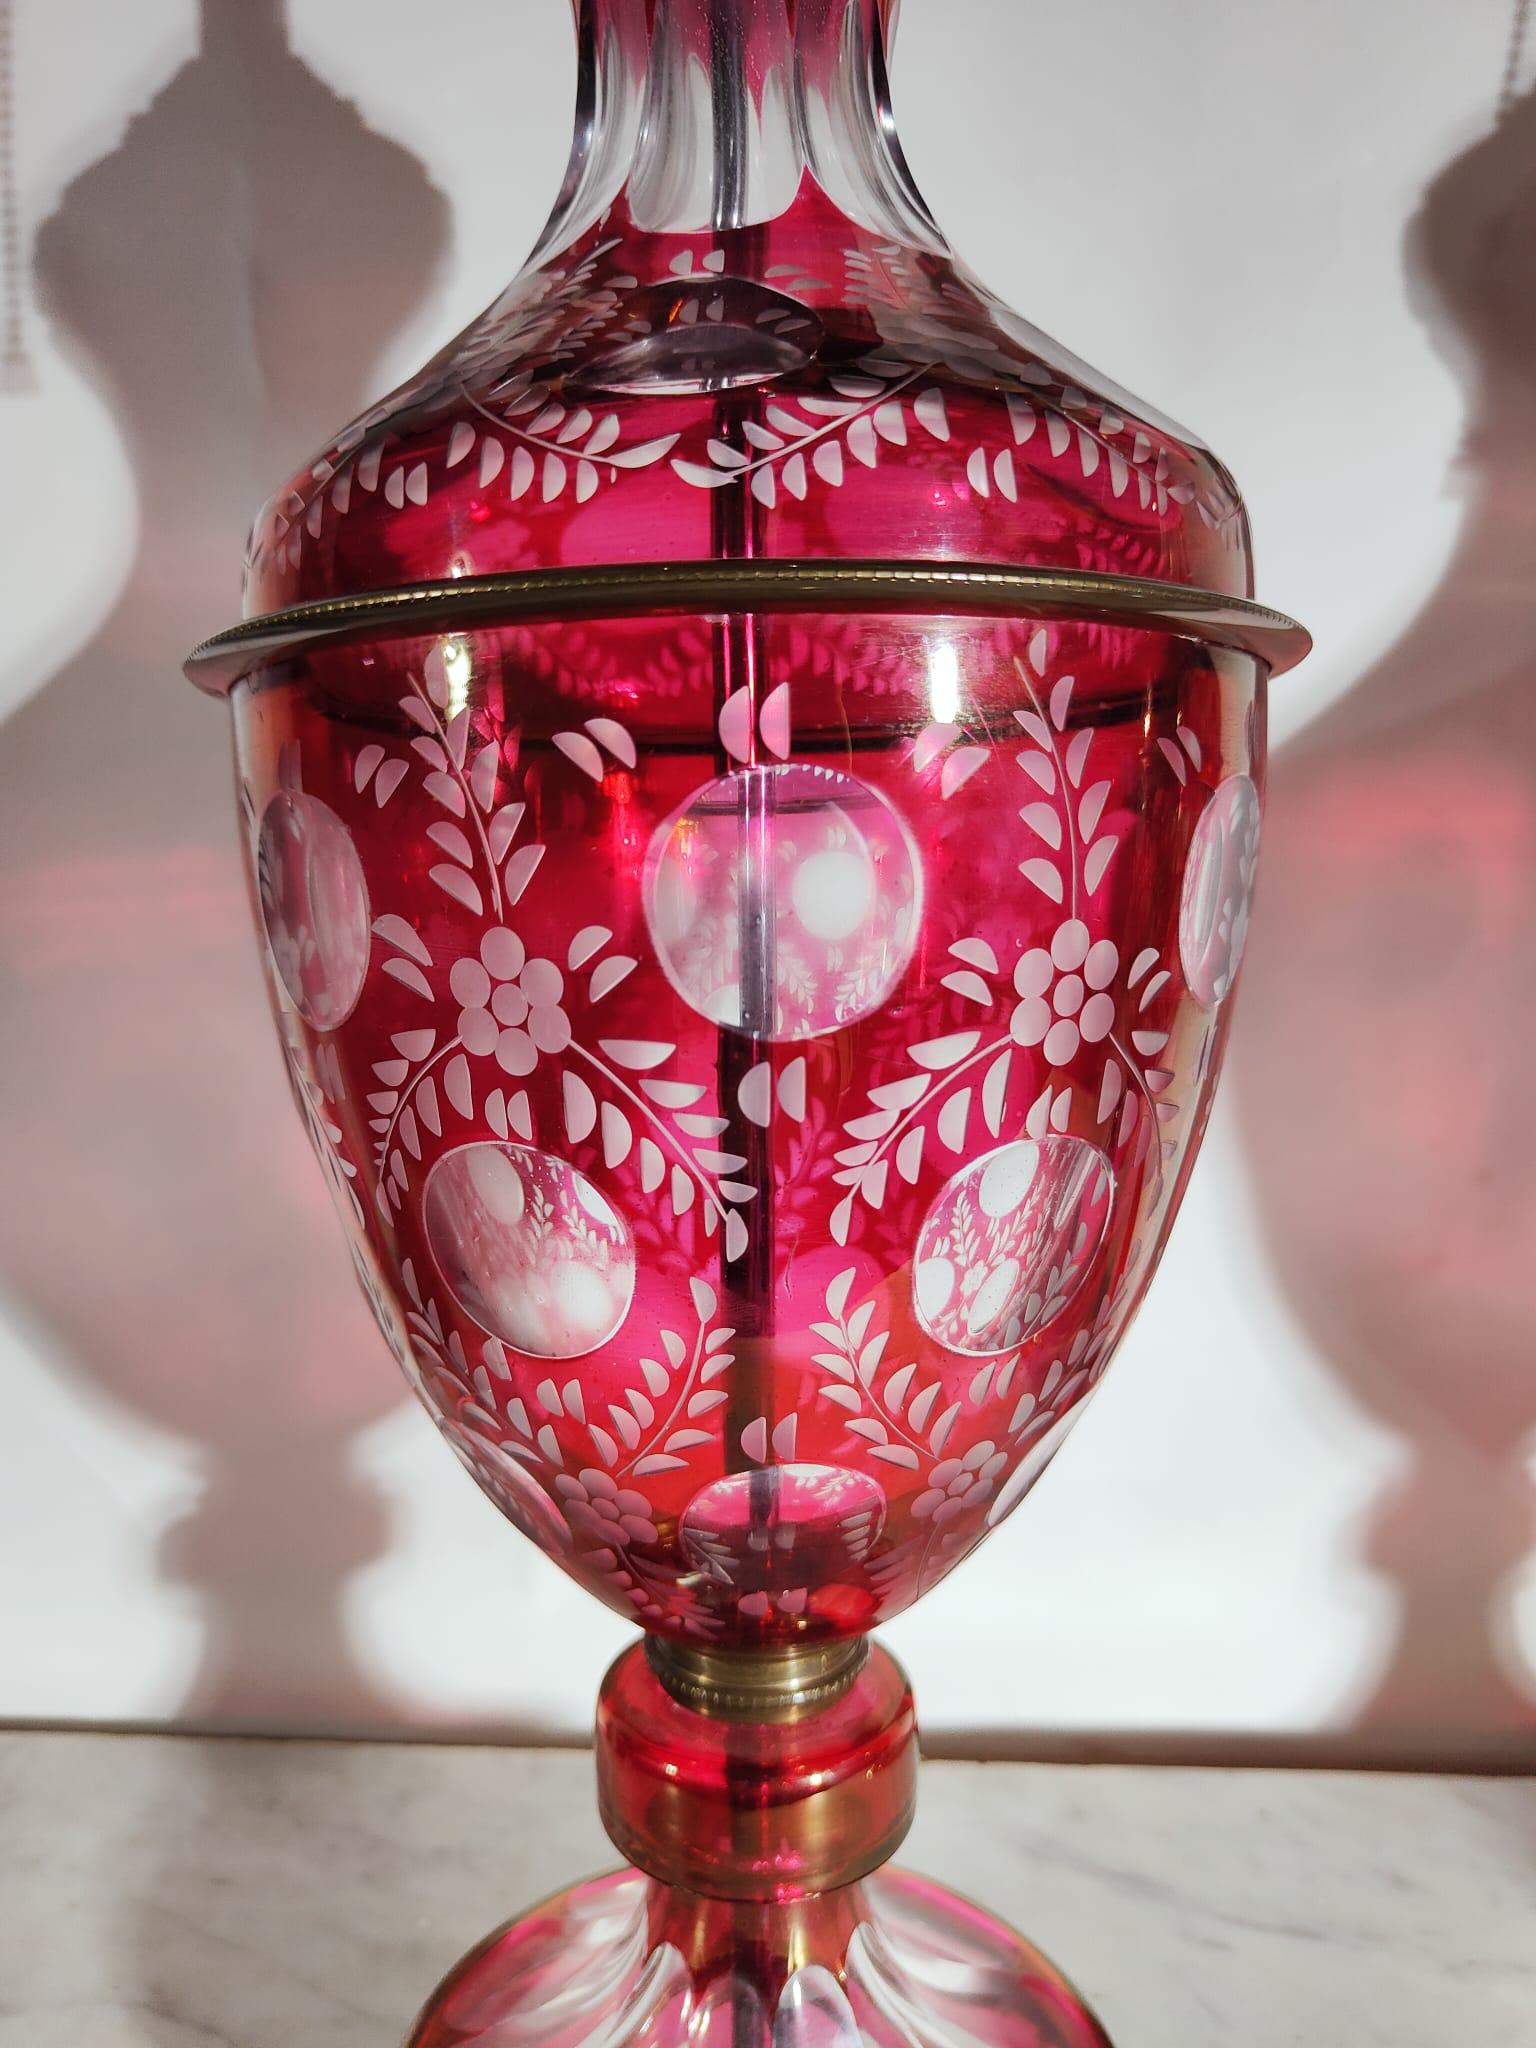 Lampes en verre taillé de 1900
Paire de lampes en verre taillé rouge et transparent en forme de vases. 
Ils datent de la première moitié de 1900. Fabriqué en France. 
Ils sont en parfait état, sans défauts. 
Mesure totale 82 cm et les vases en verre